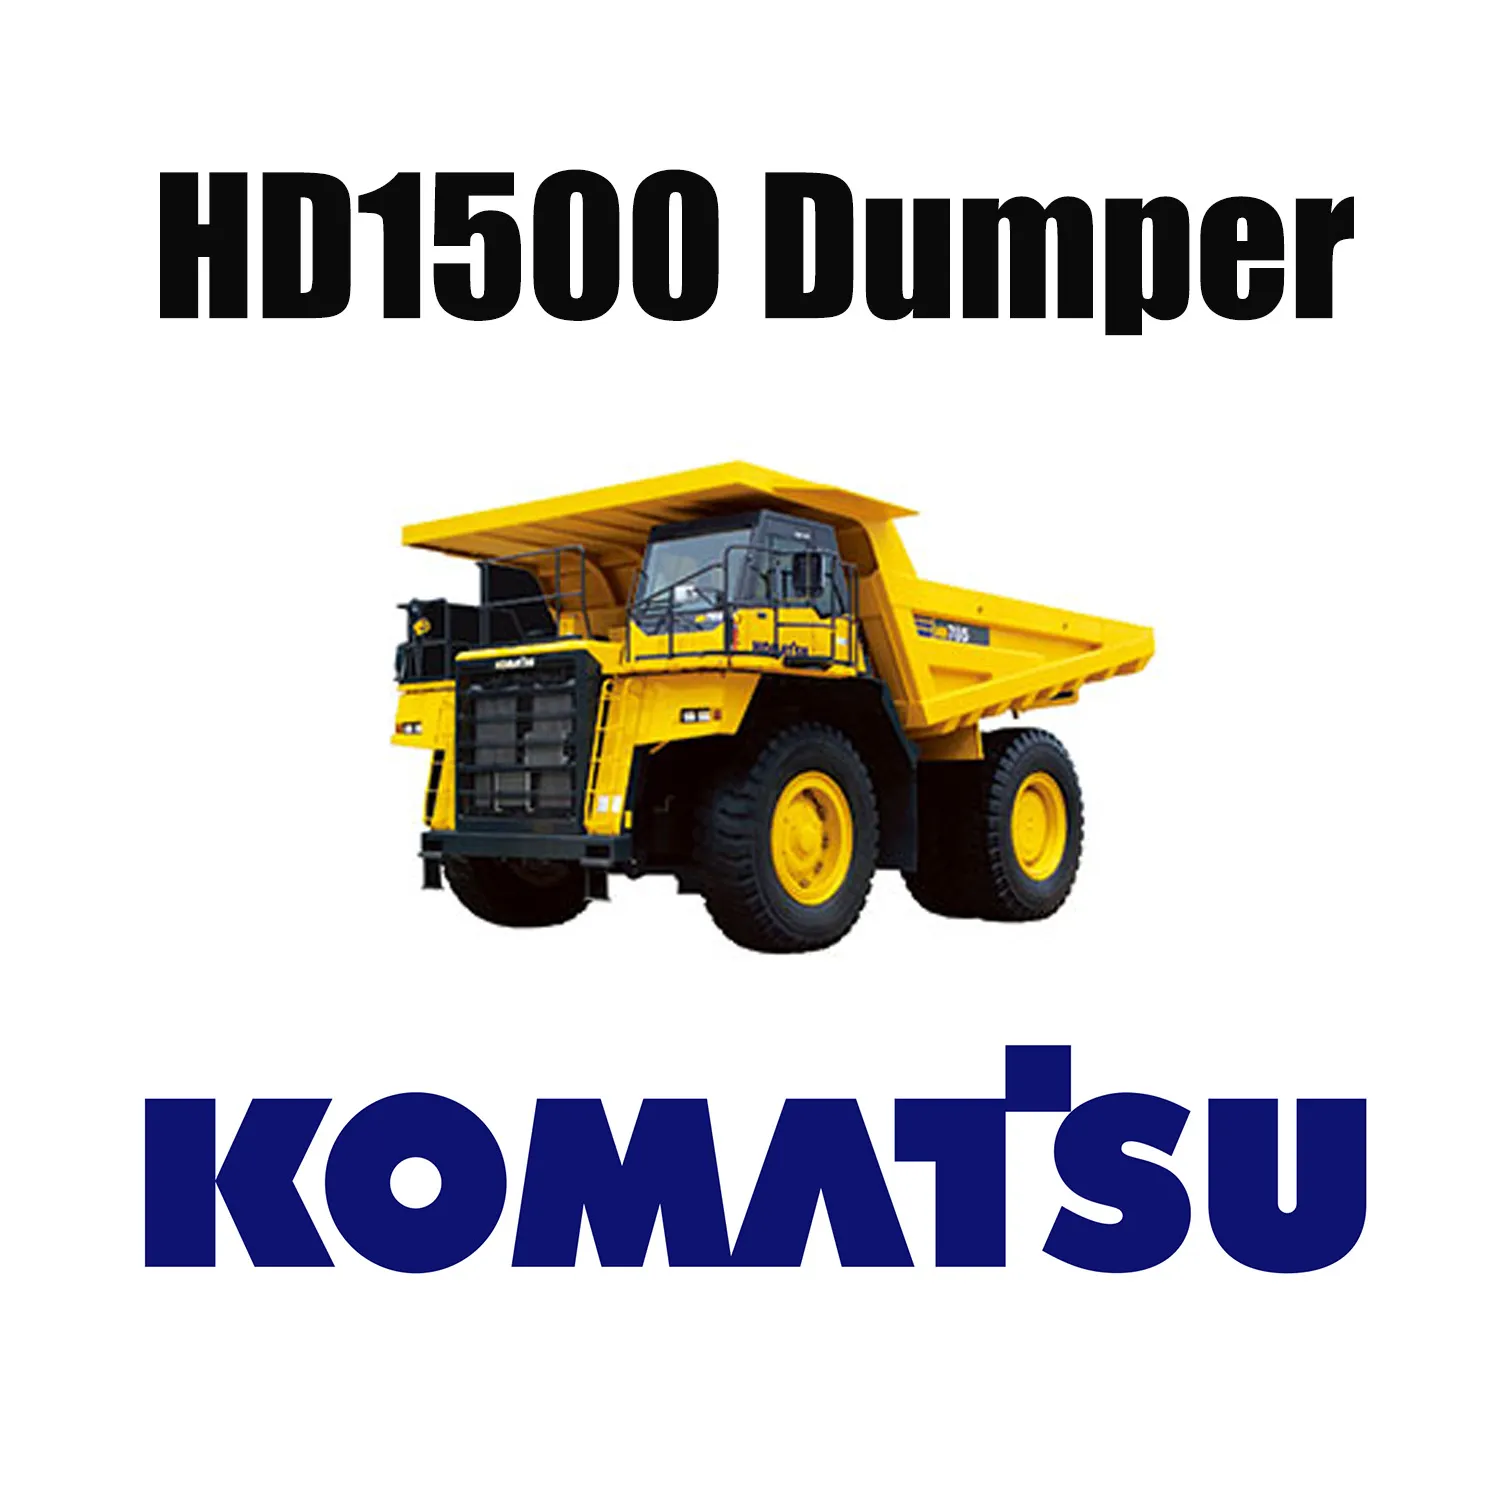 Механический грузовик KOMATSU HD1500, оснащенный специальными шинами EarthMover 33.00R51